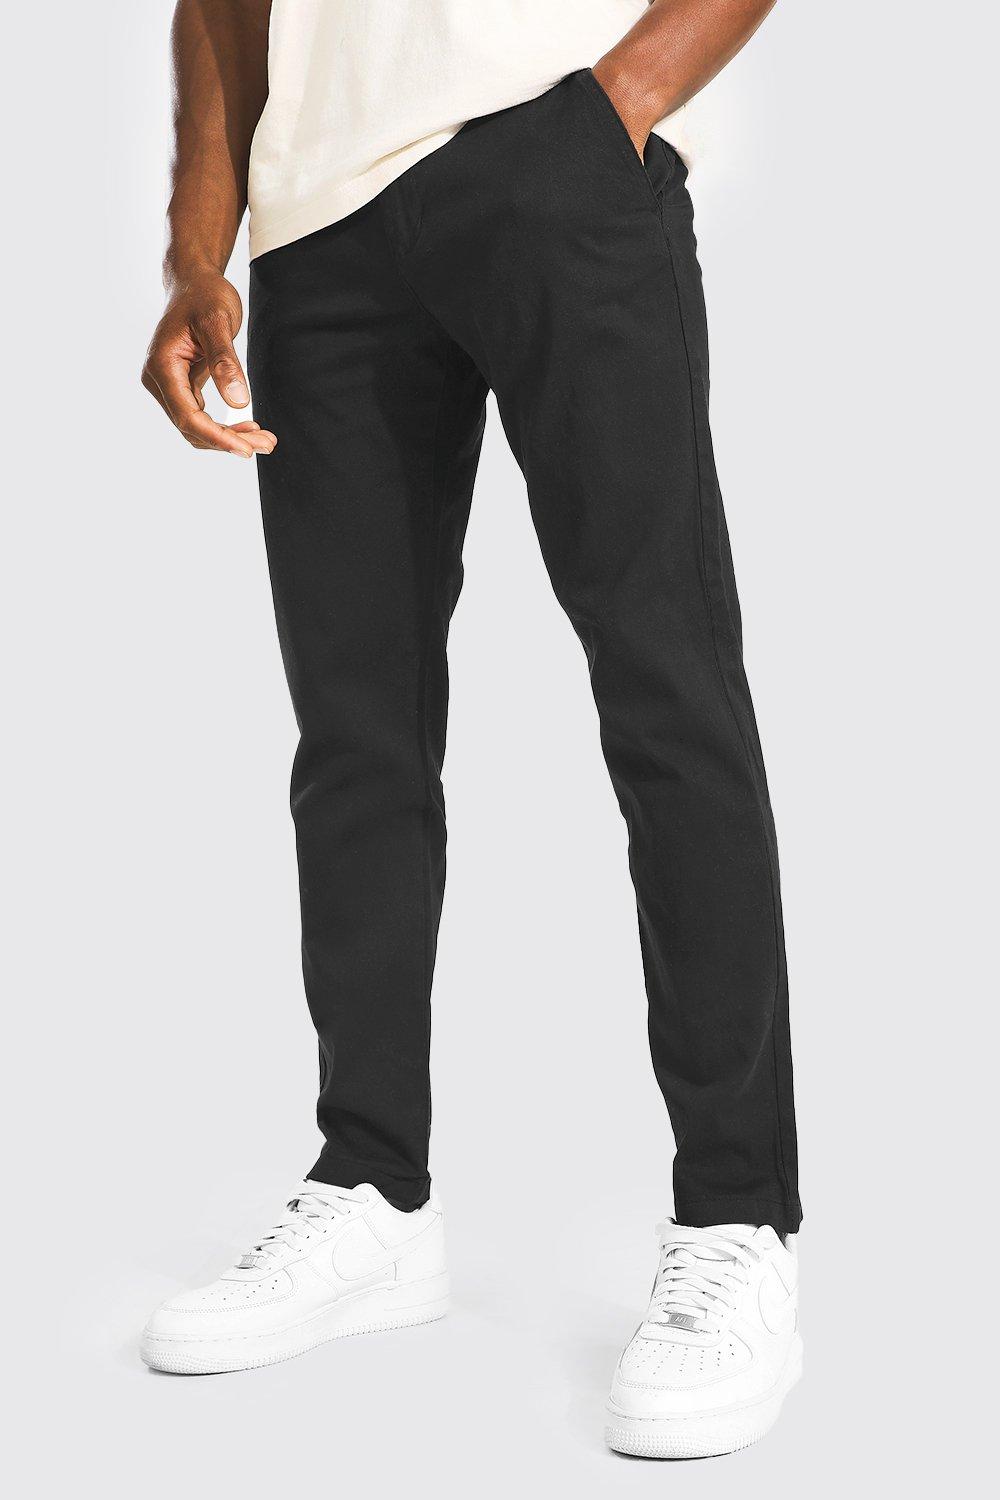 pantalon chino skinny homme - noir - 28, noir